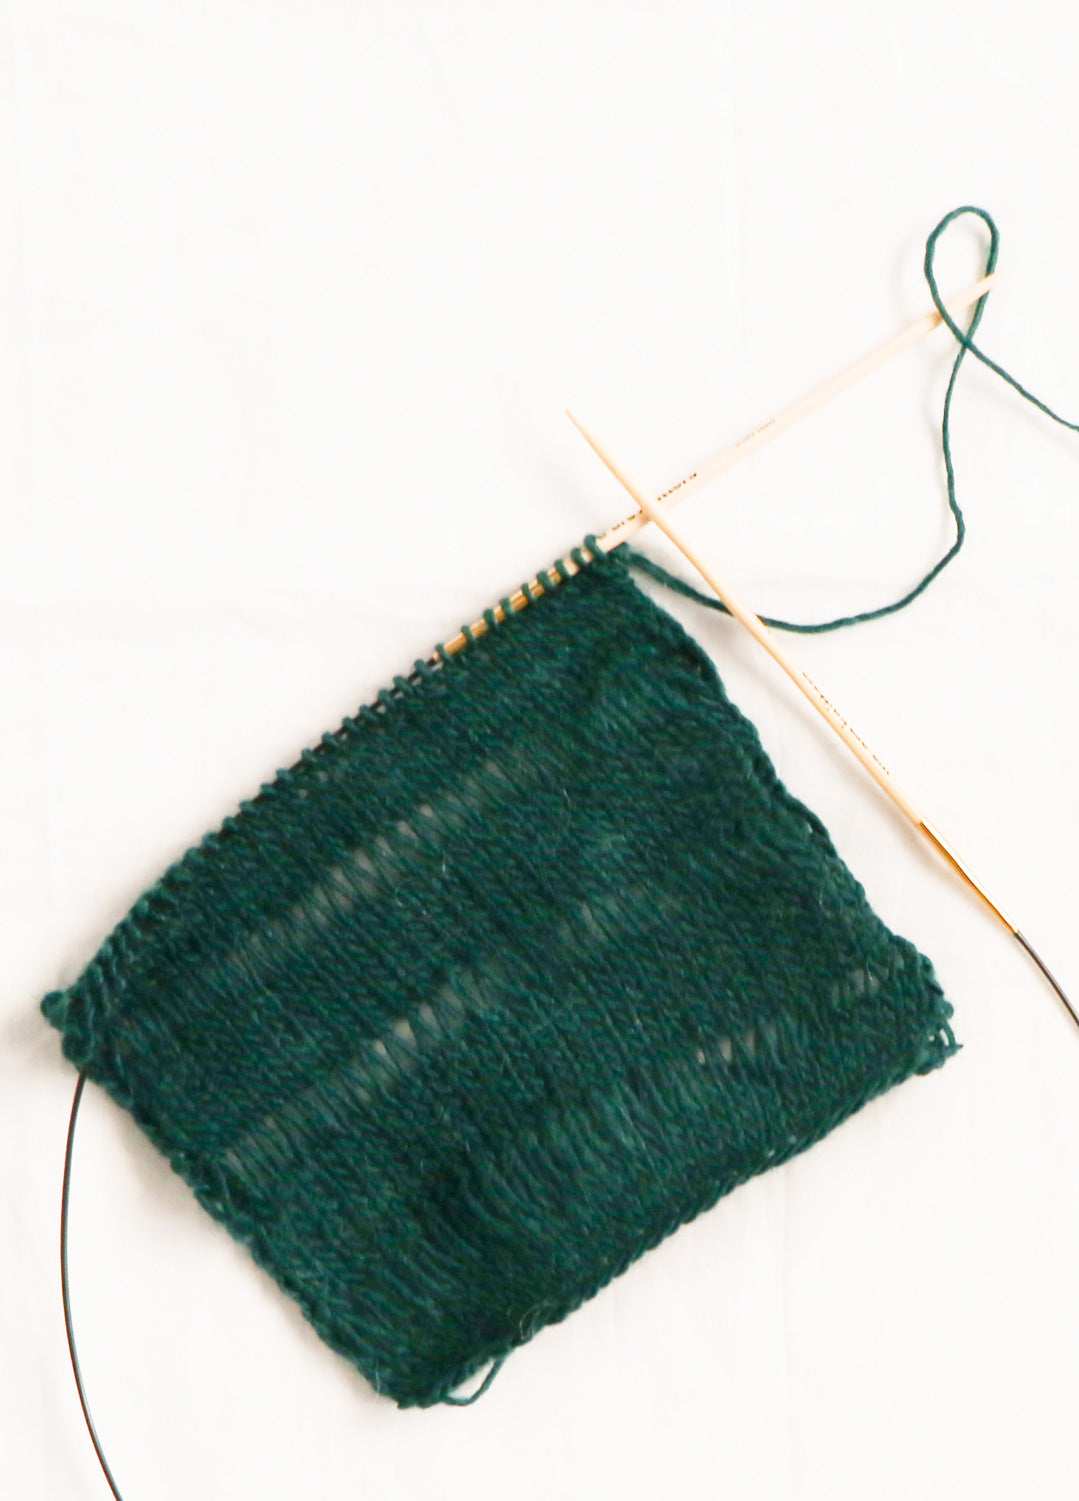 The Wool Forest Green – weareknitters